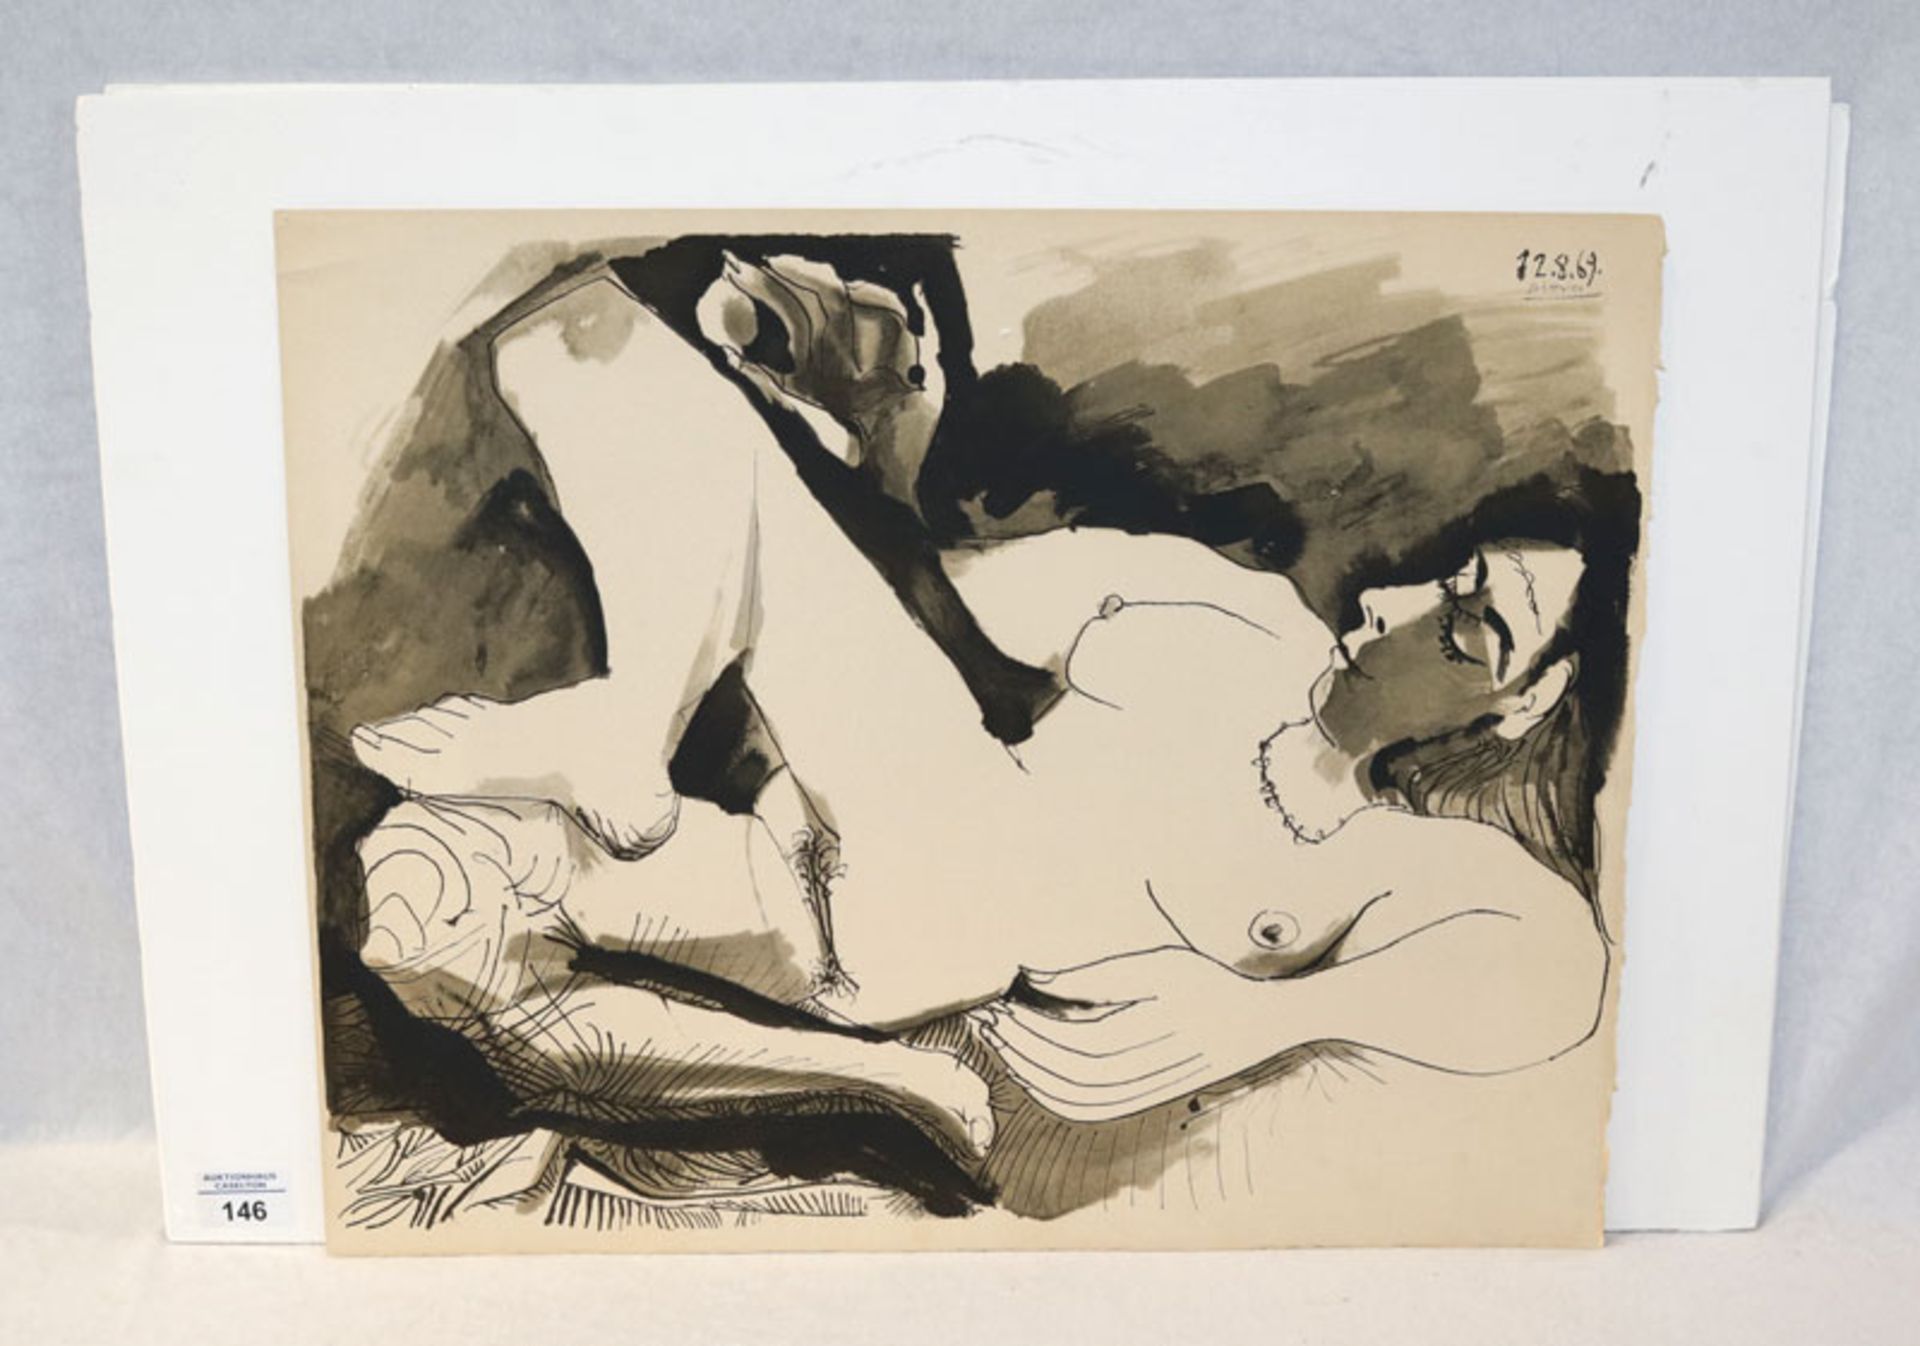 Druck 'Frauenakt', in der Platte signiert 12.8.69 Picasso, Pablo Picasso, * 1881 Malage + 1973